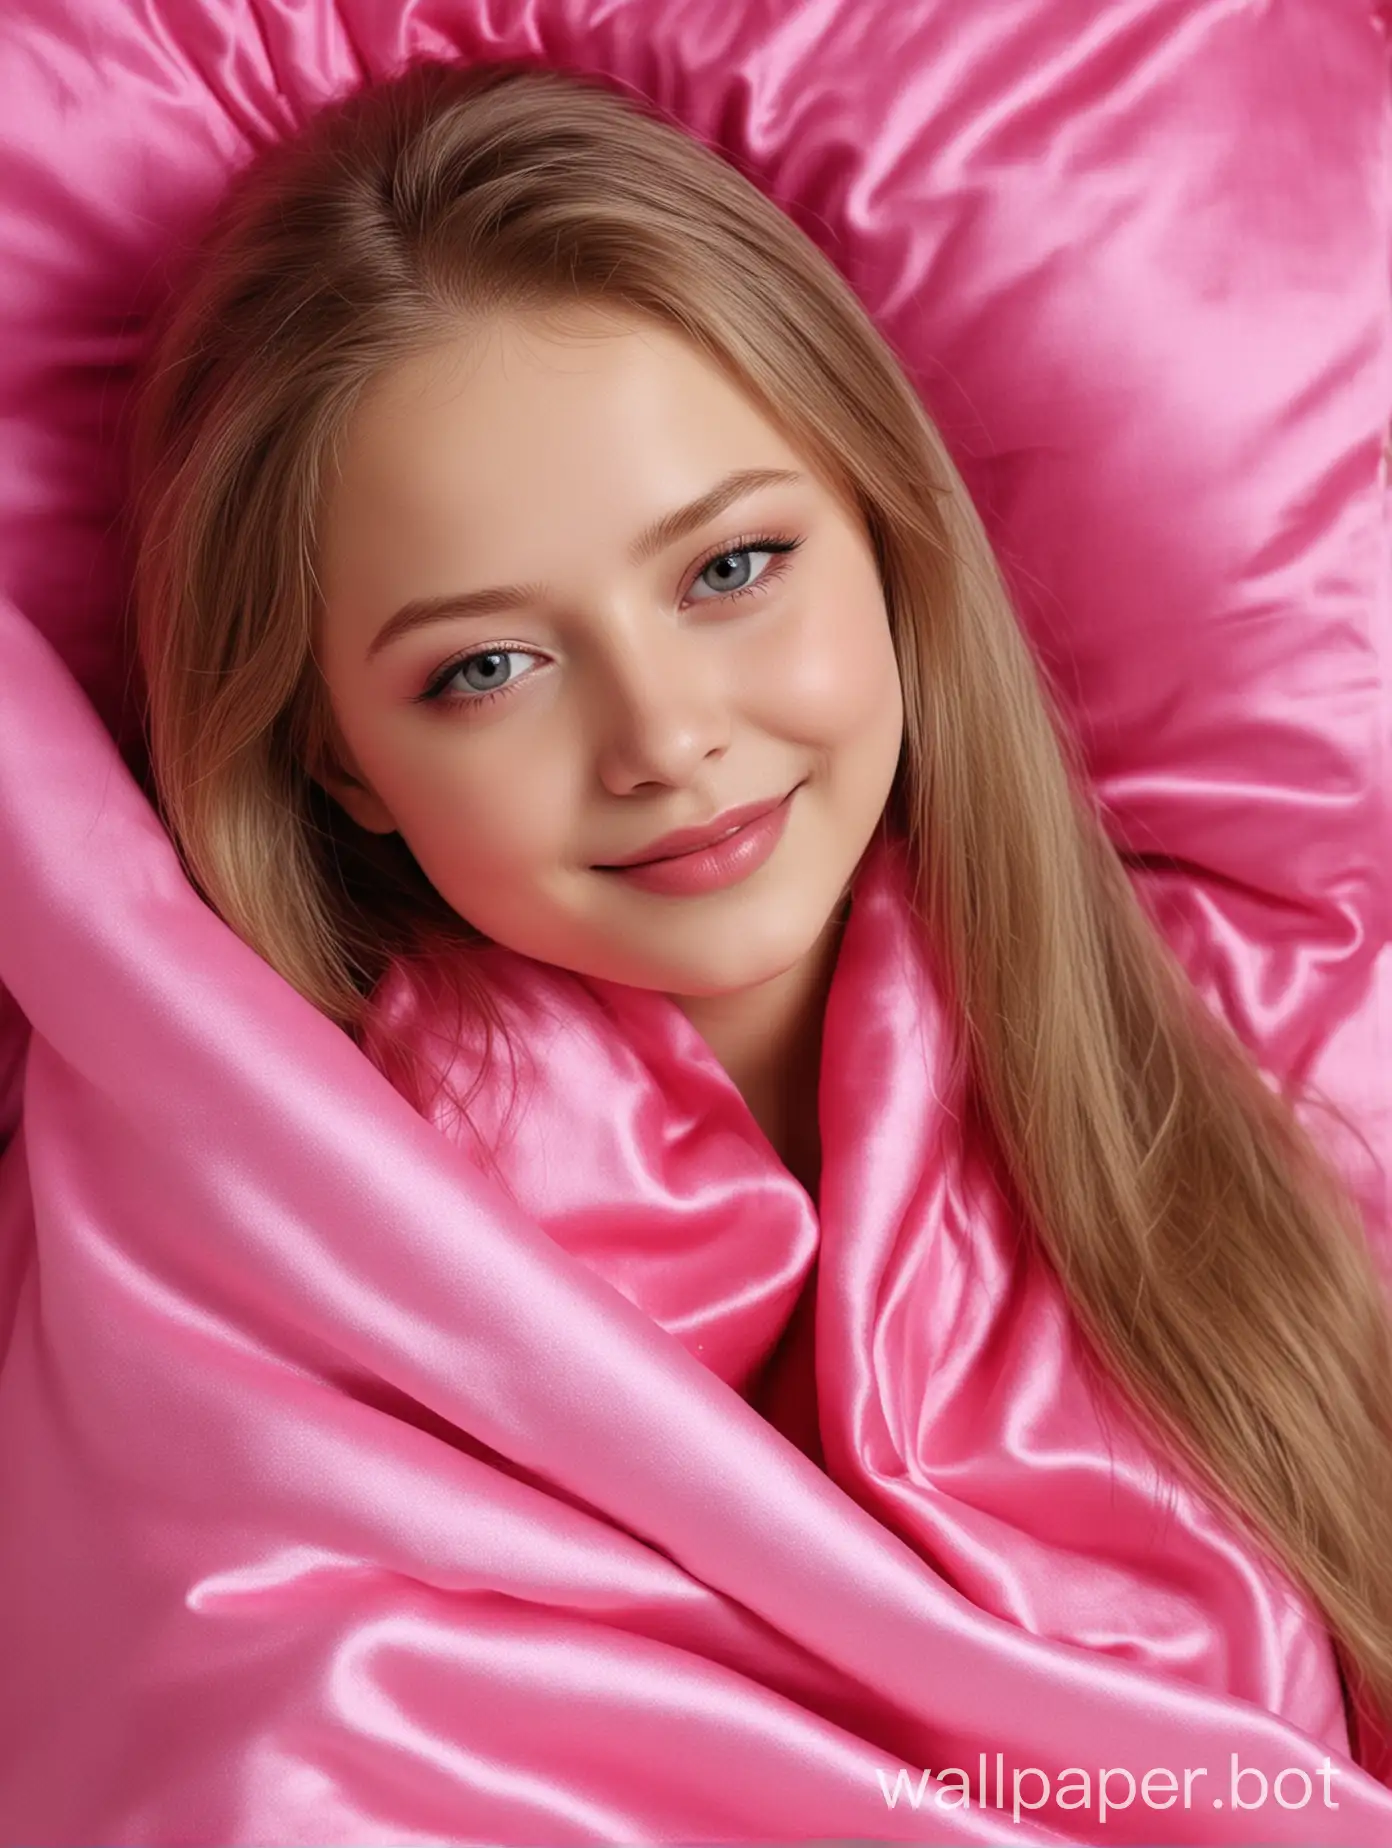 Сладкая милашка Юлия Липницкая с длинными прямыми шелковистыми волосами в розовом фуксиевом шелковом одеяле и подушке улыбается